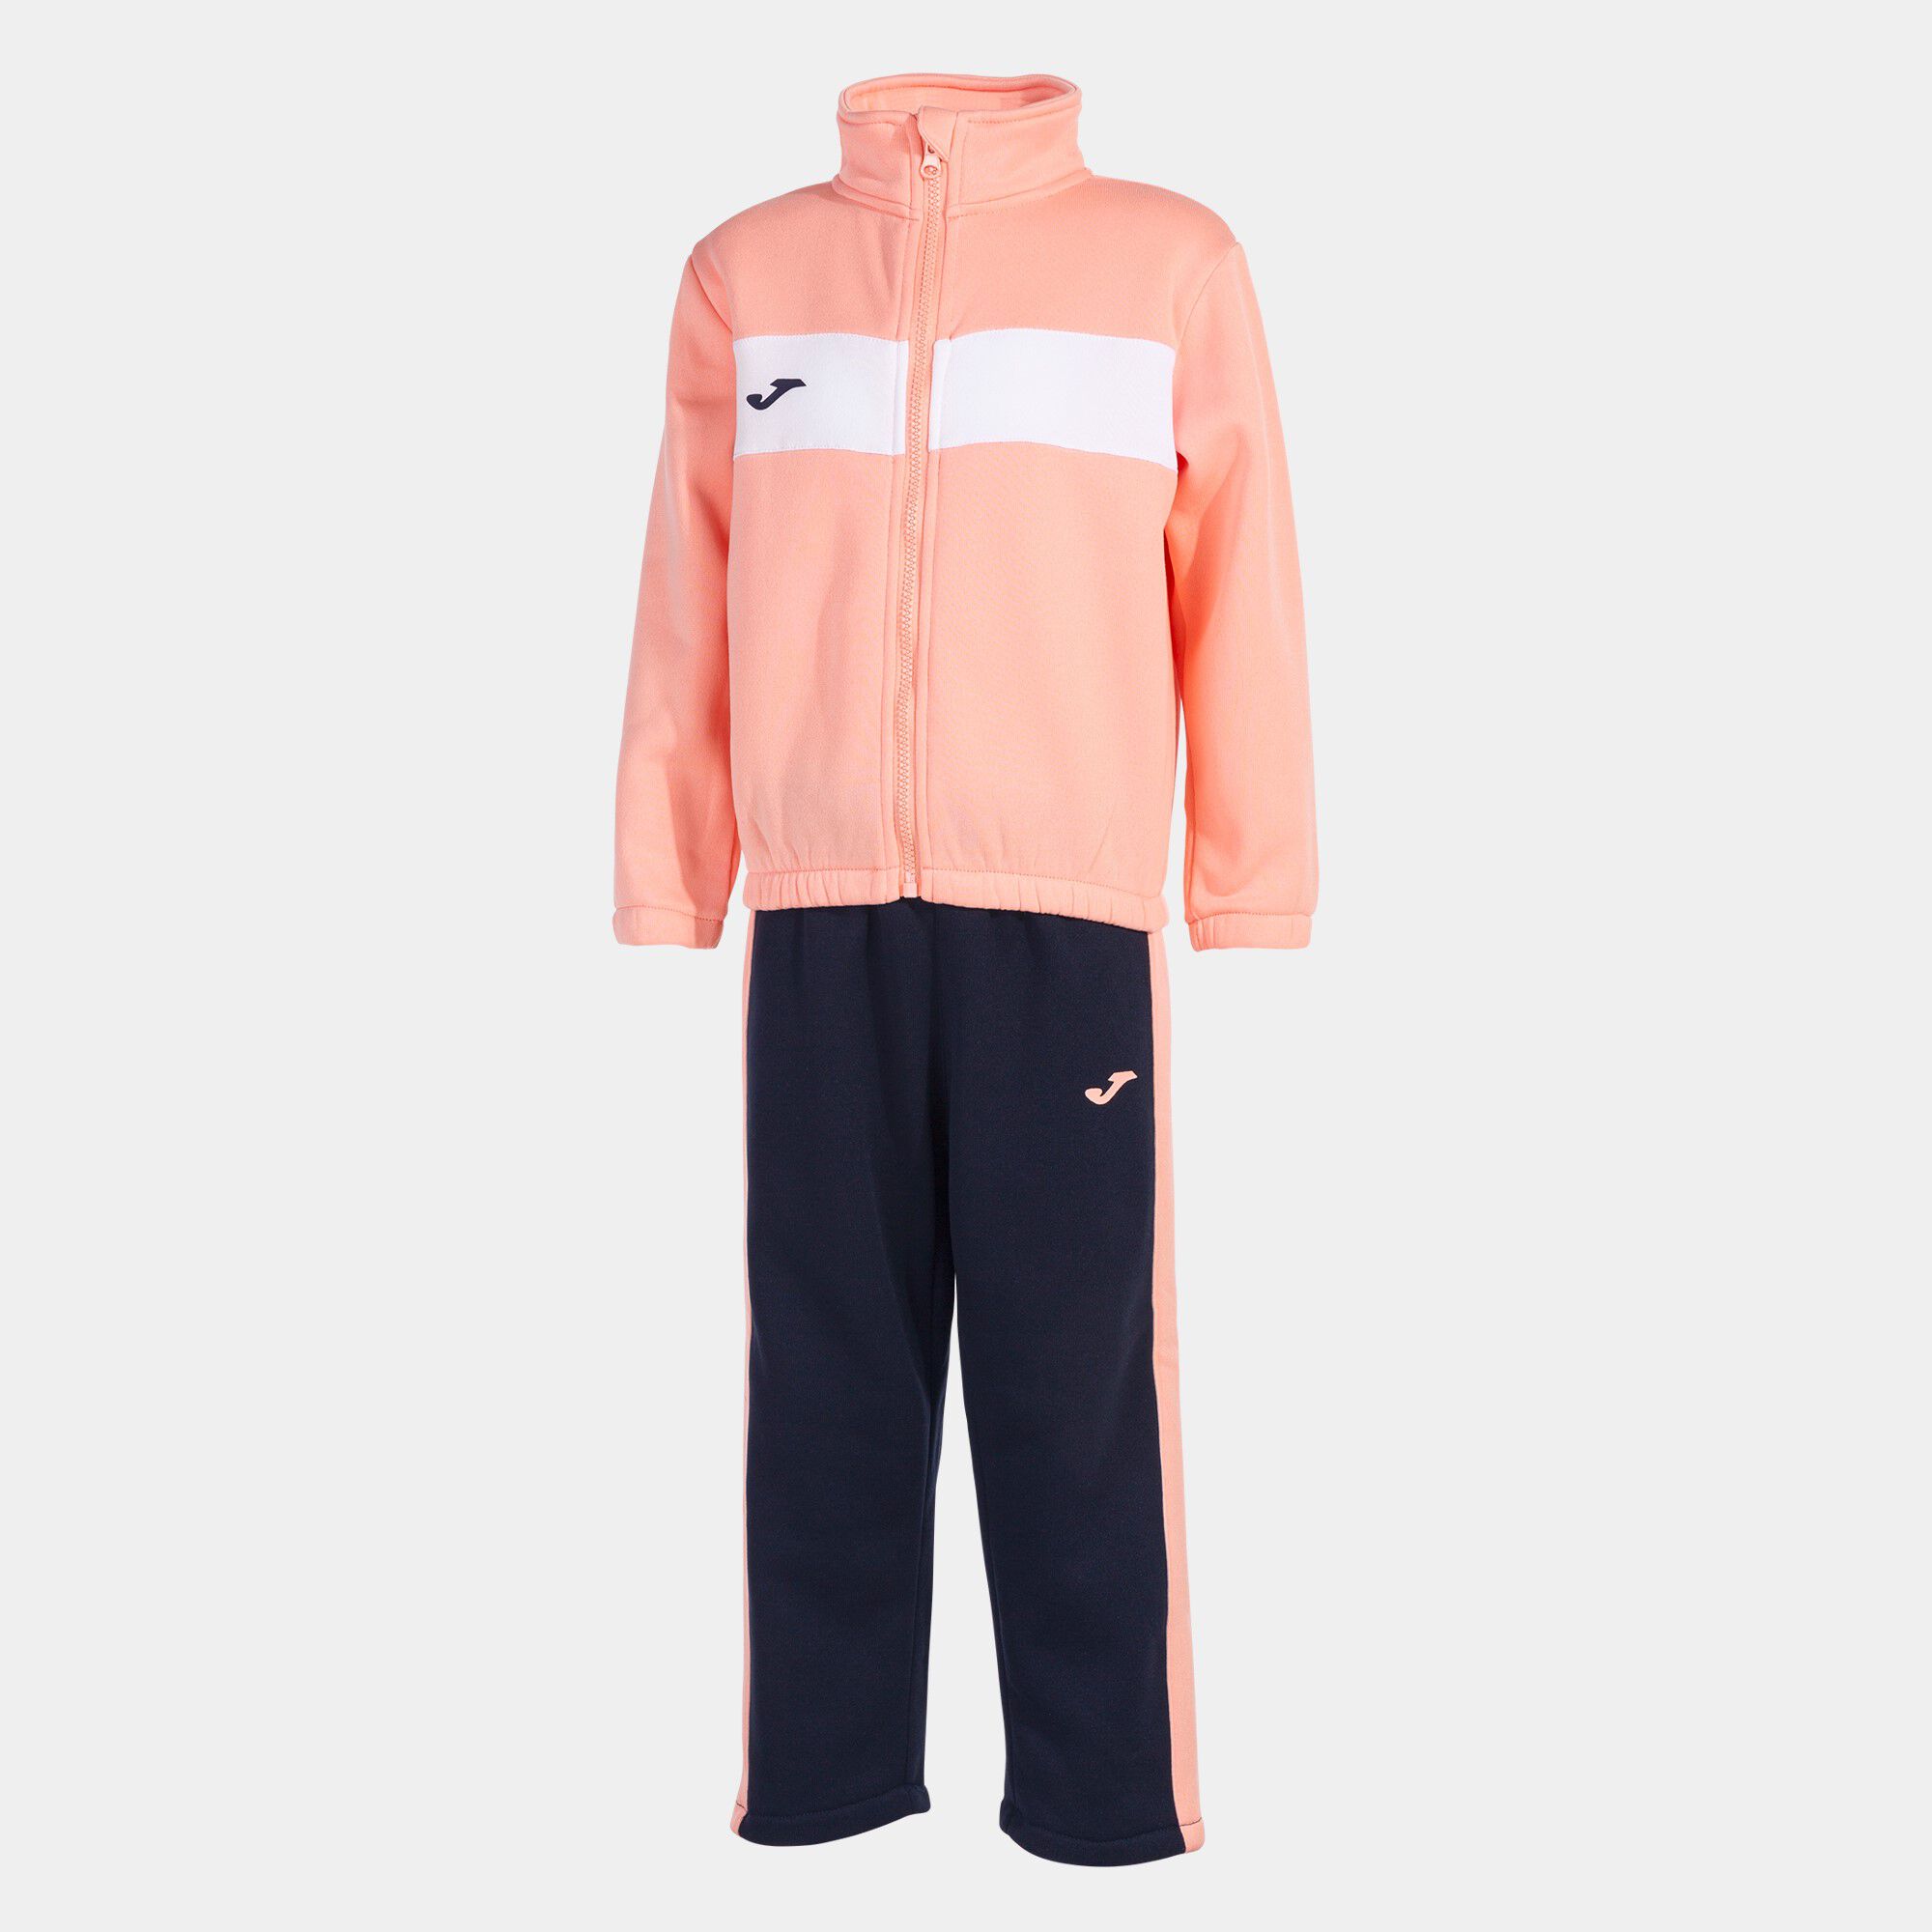 Trainingsanzug junior Stripe rosa marineblau